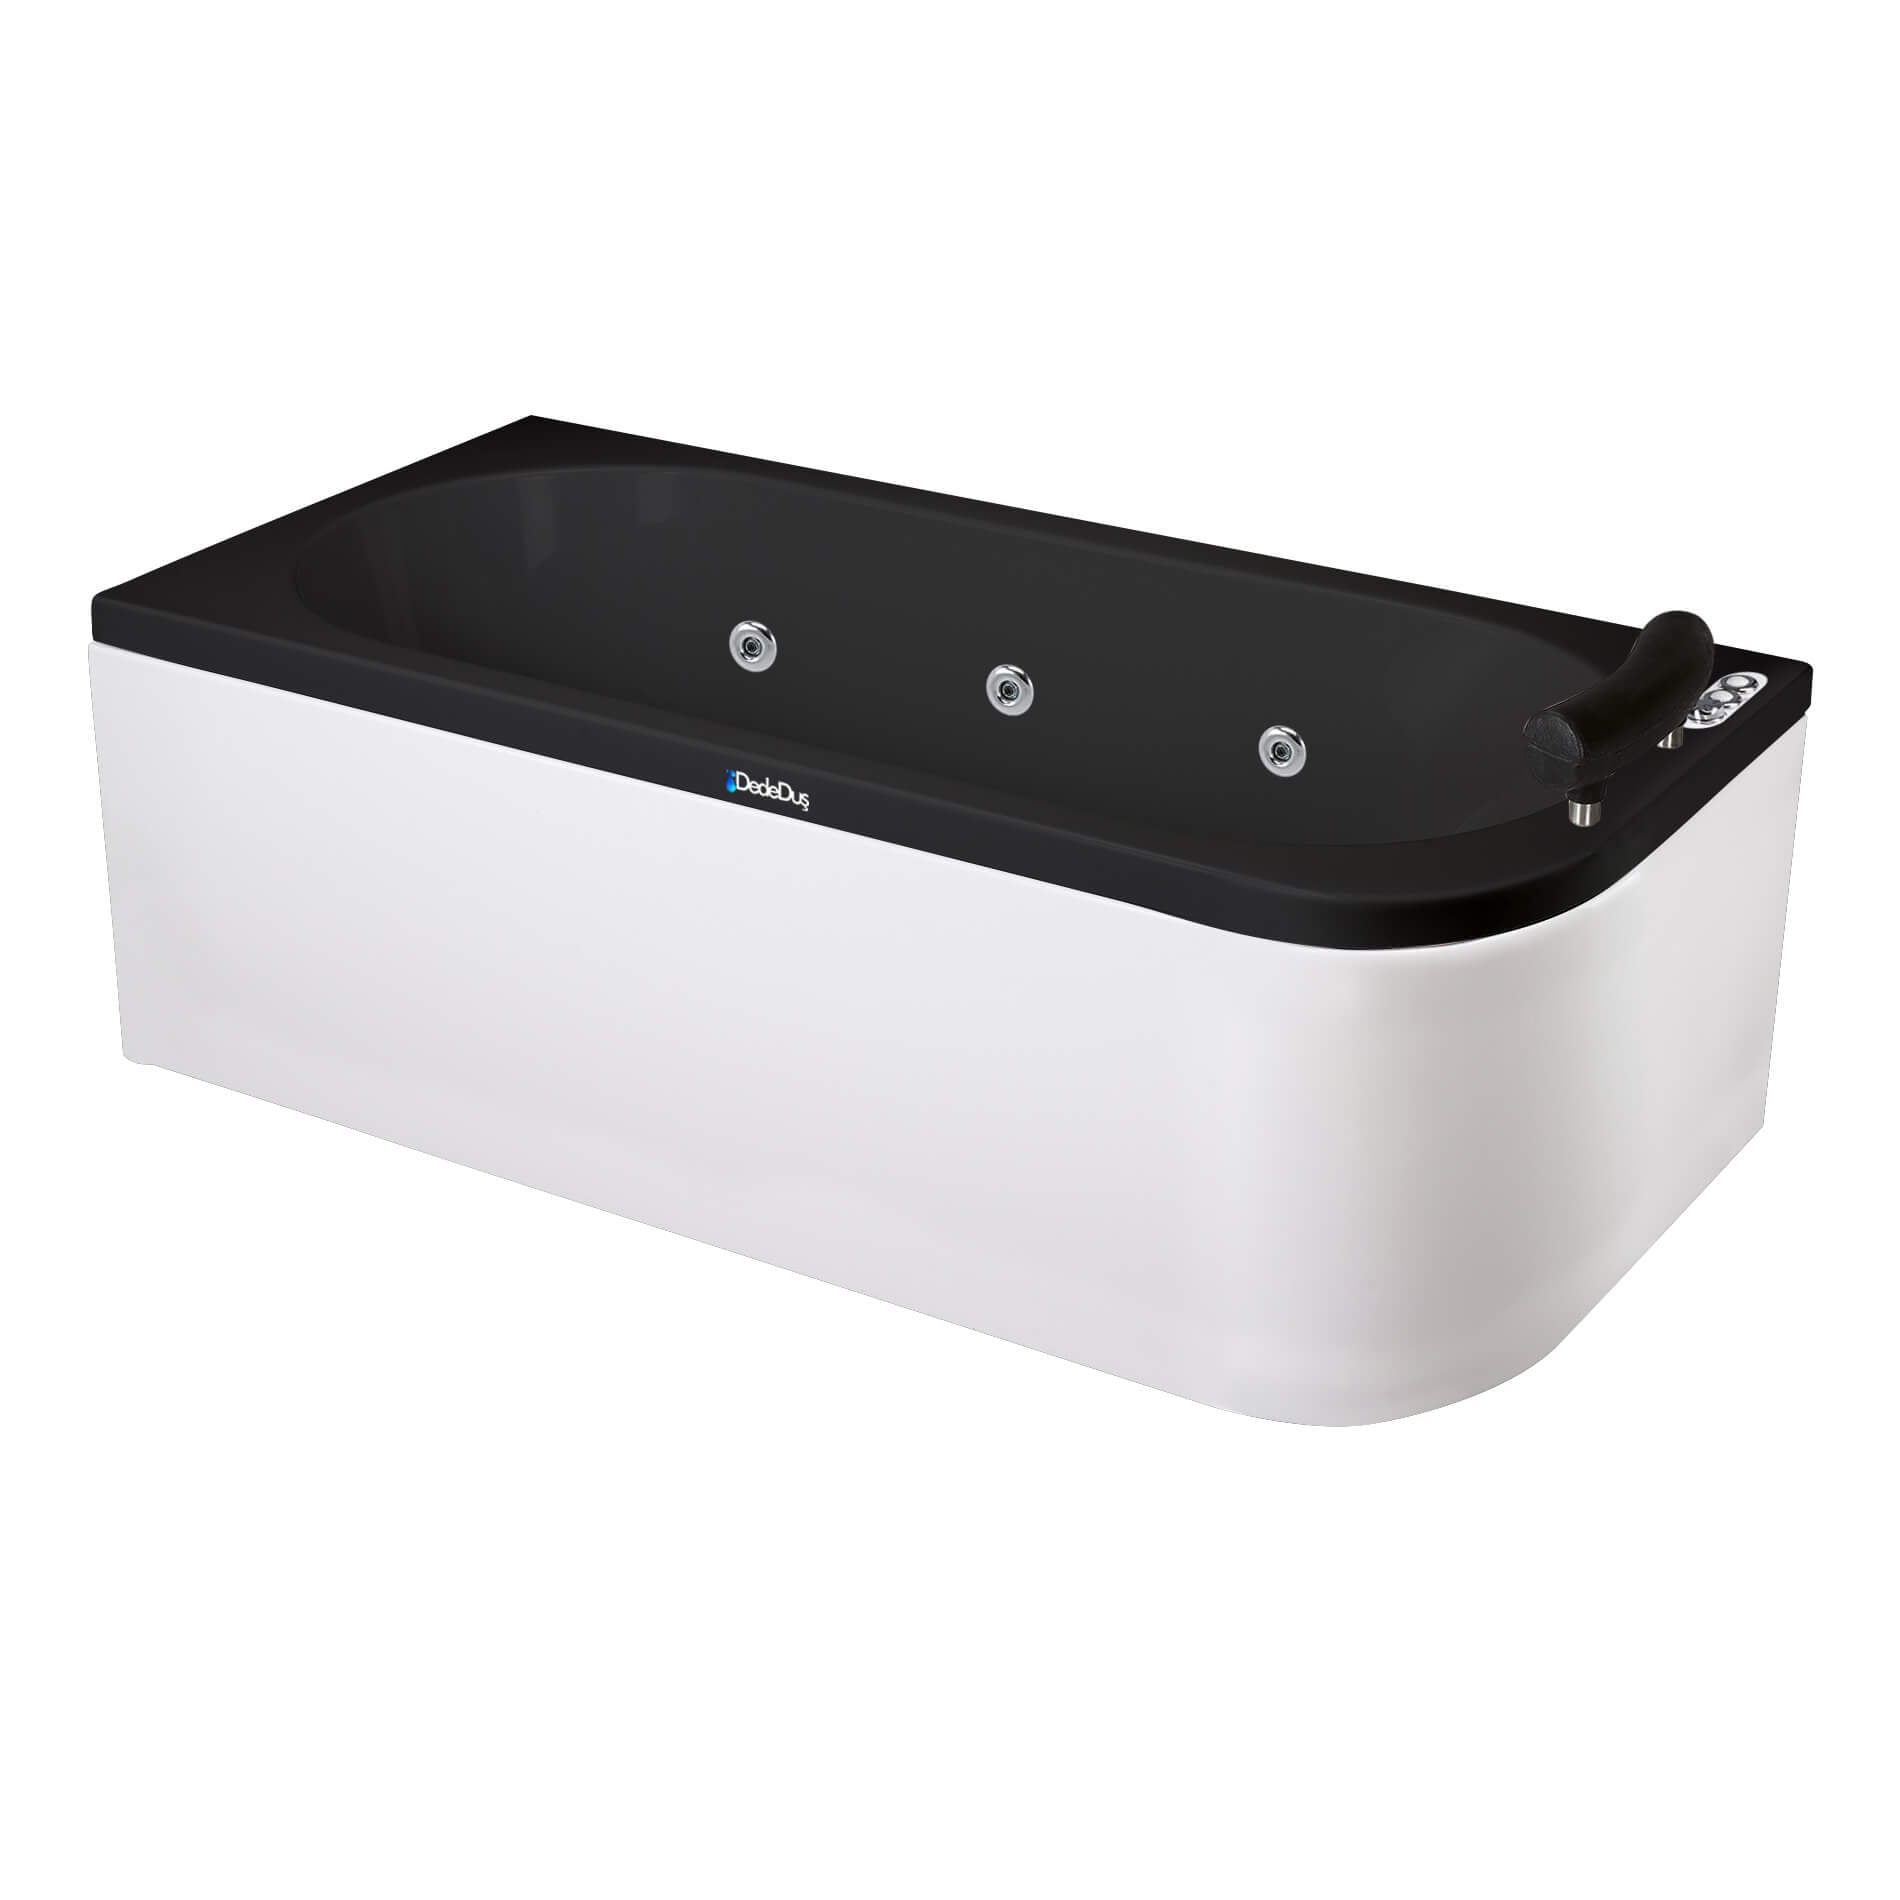 Siyah - beyaz renkli, 180x180cm, bir köşesi oval, dikdörtgen tek kişilik jakuzi, Dede Duş, Banyo Concept, Riva